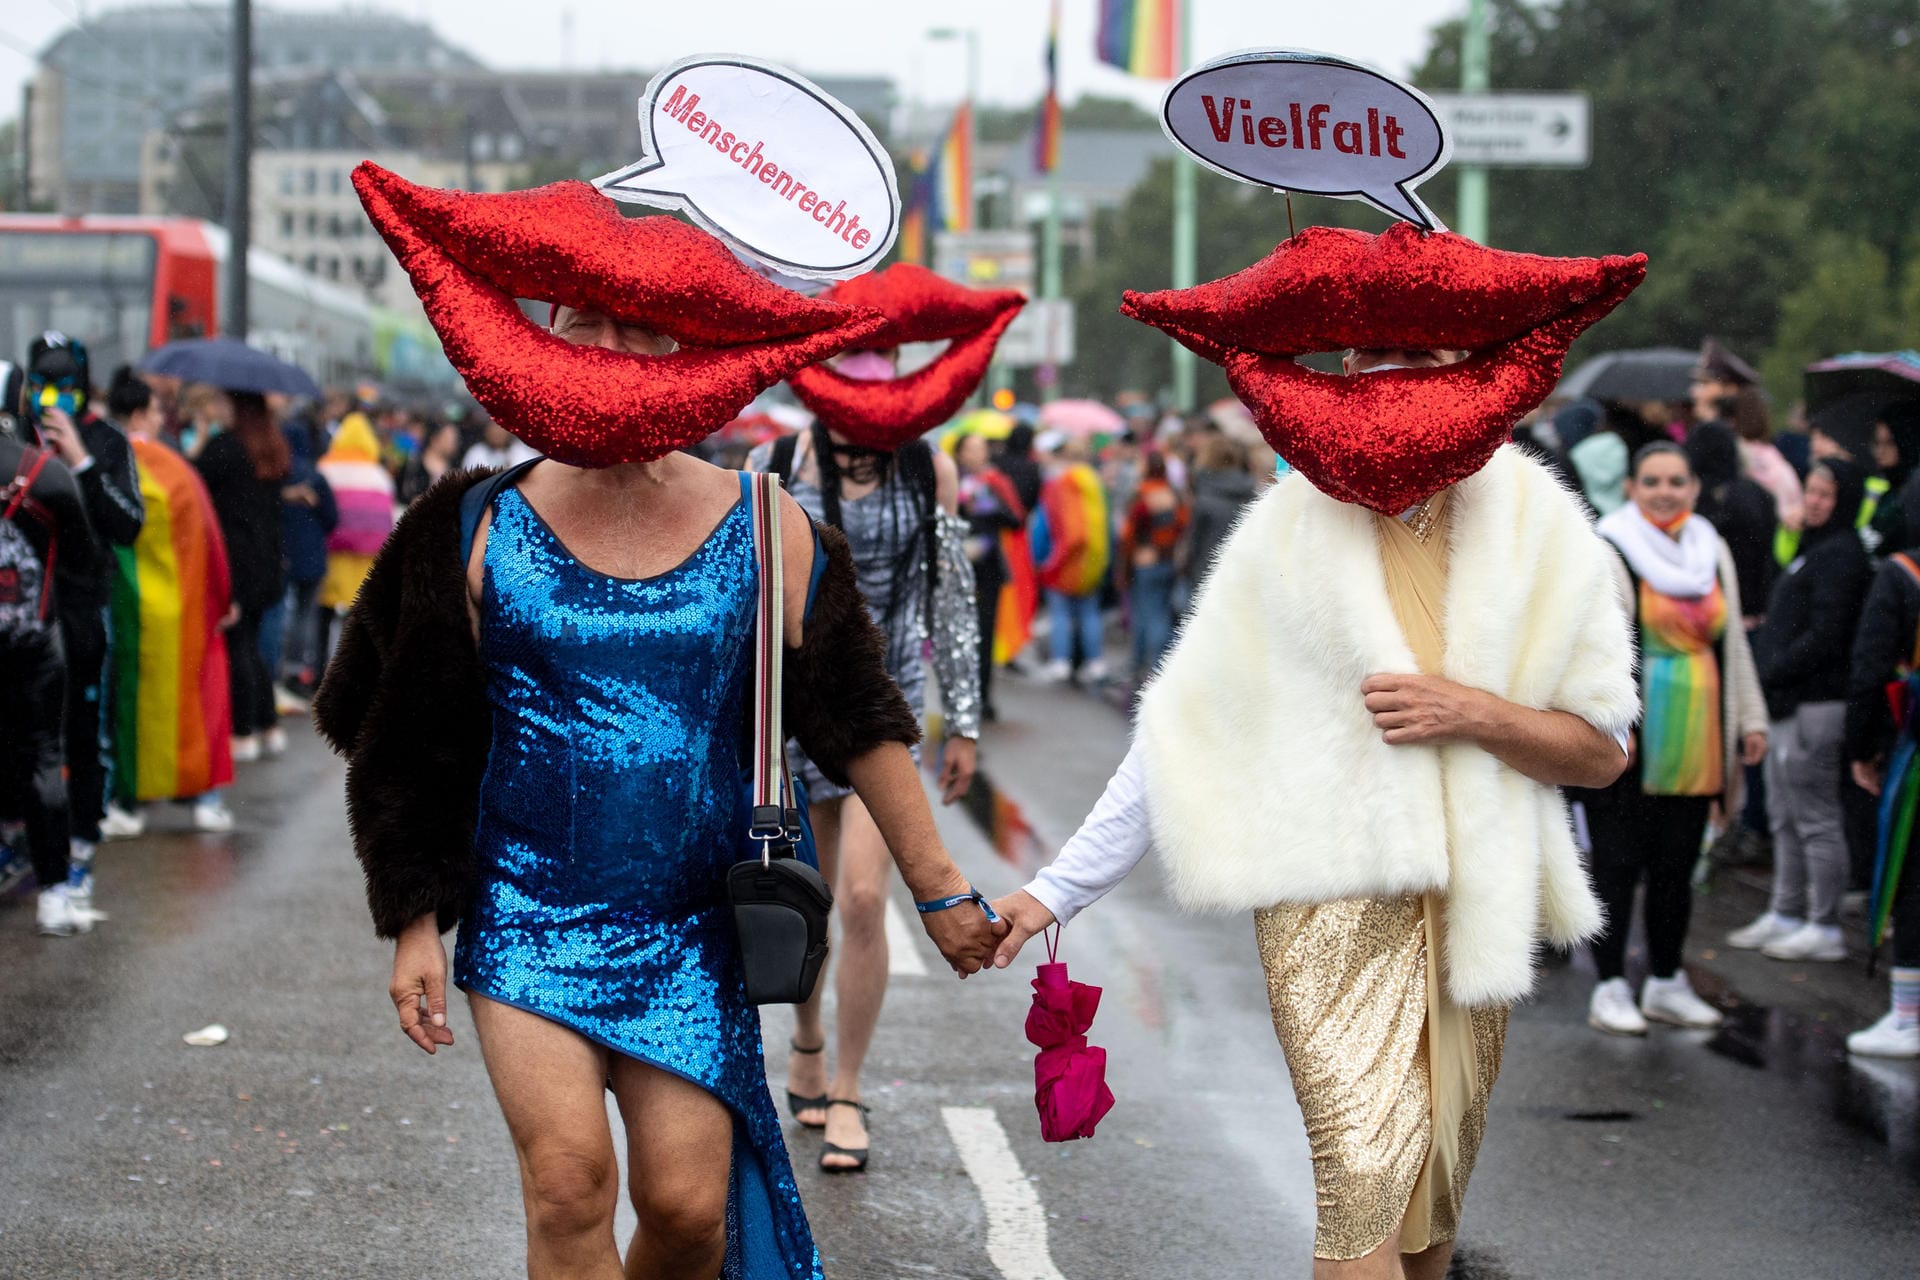 Teilnehmer der Parade tragen rote Münder mit Sprechblasen: "Menschenrechte" "Vielfalt" steht darauf.